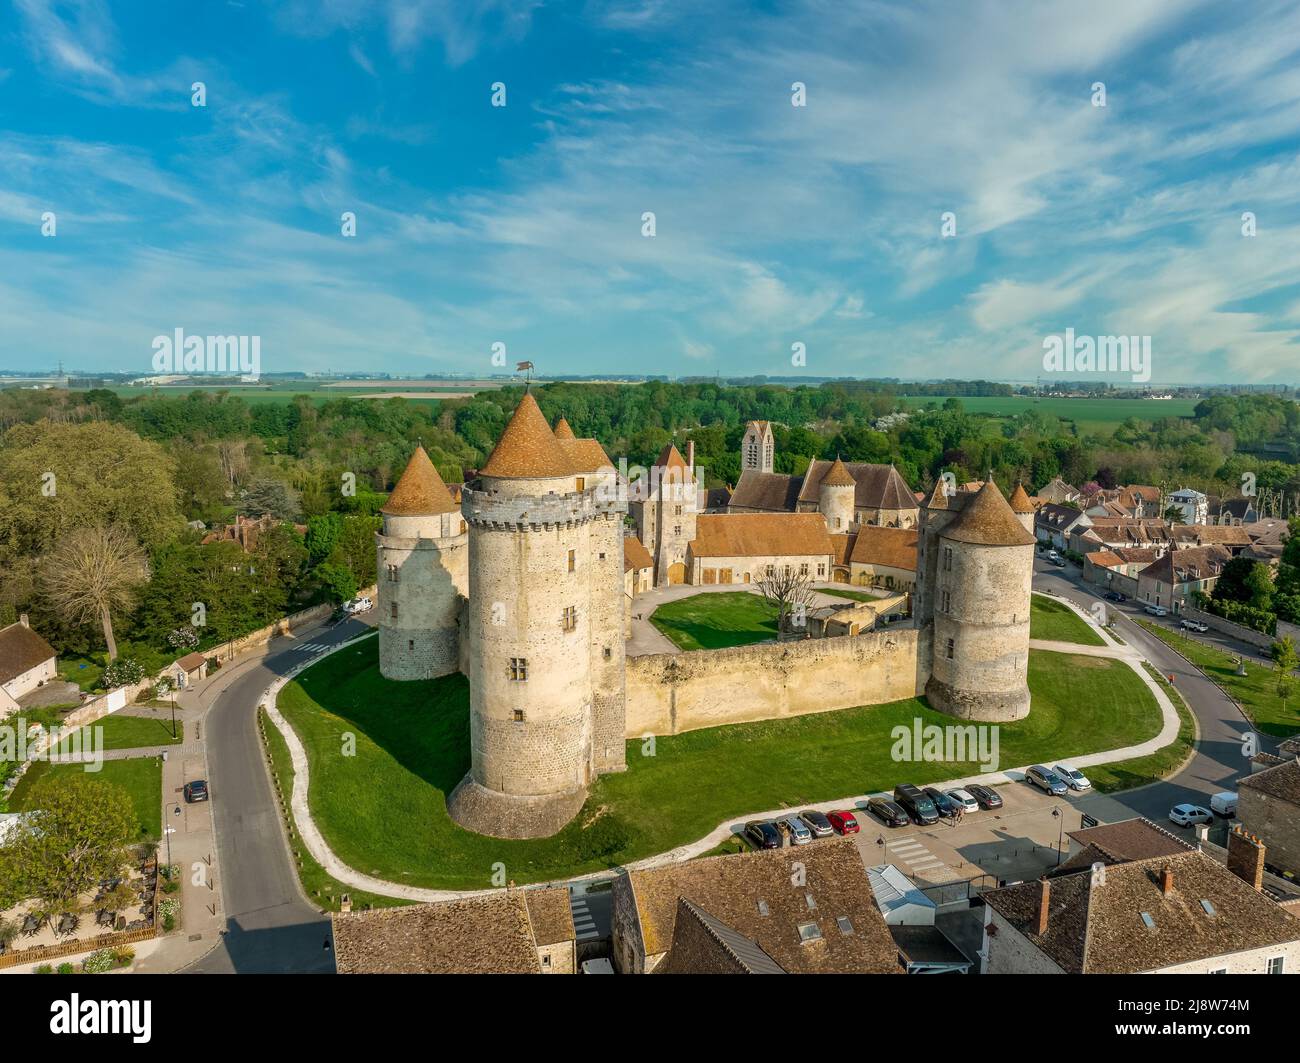 Veduta aerea del castello di Blandy nel nord della Francia fortezza feudale tipica trasferita in residenza signorile in stile gotico, recinzione esagonale, Foto Stock